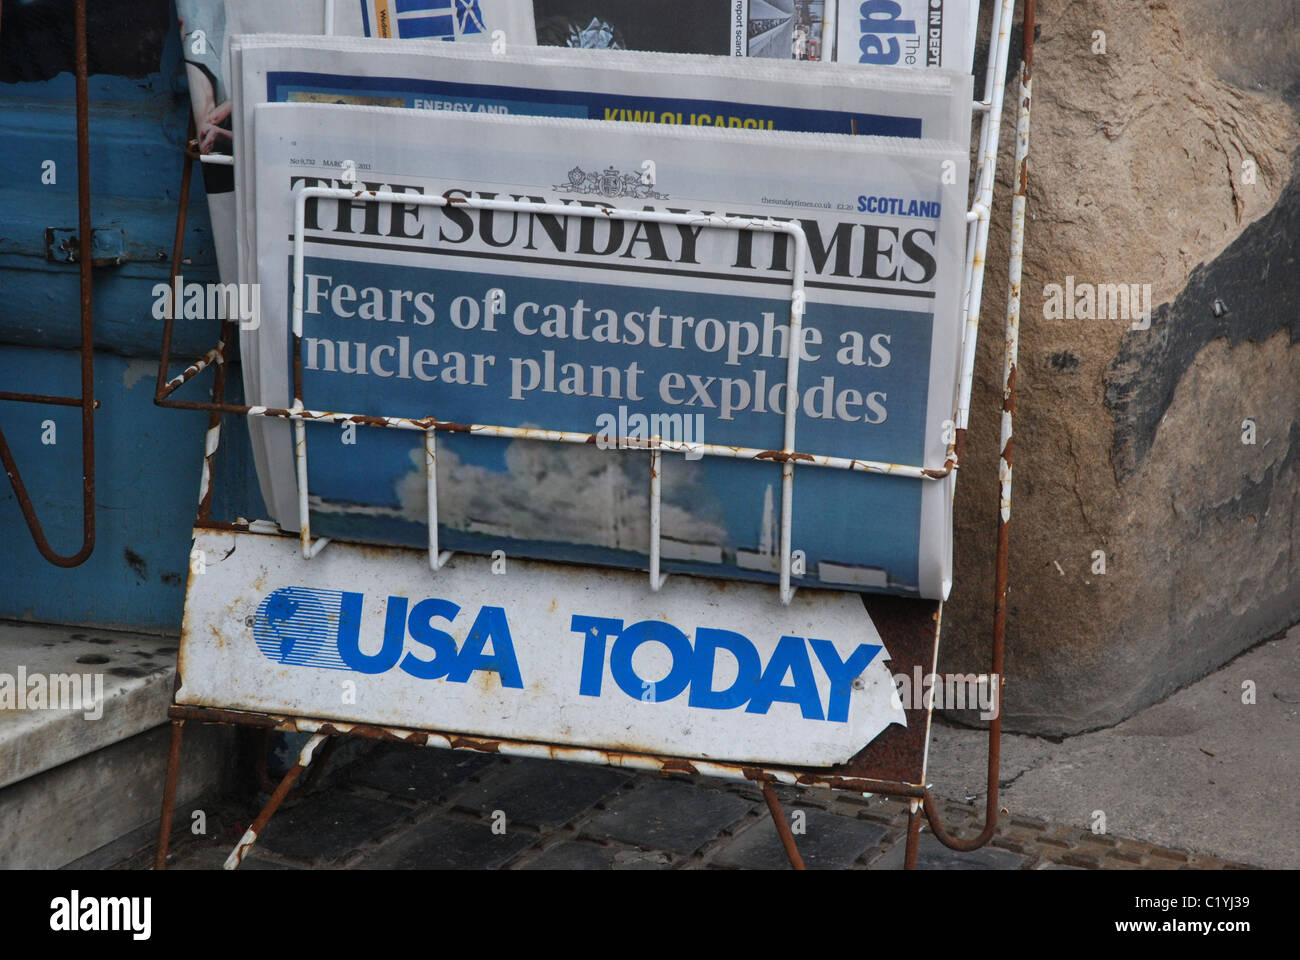 USA Today Zeitung stehen mit einer Kopie der Sunday Times außerhalb Zeitschriftenläden in Edinburgh, Schottland, Großbritannien. Stockfoto